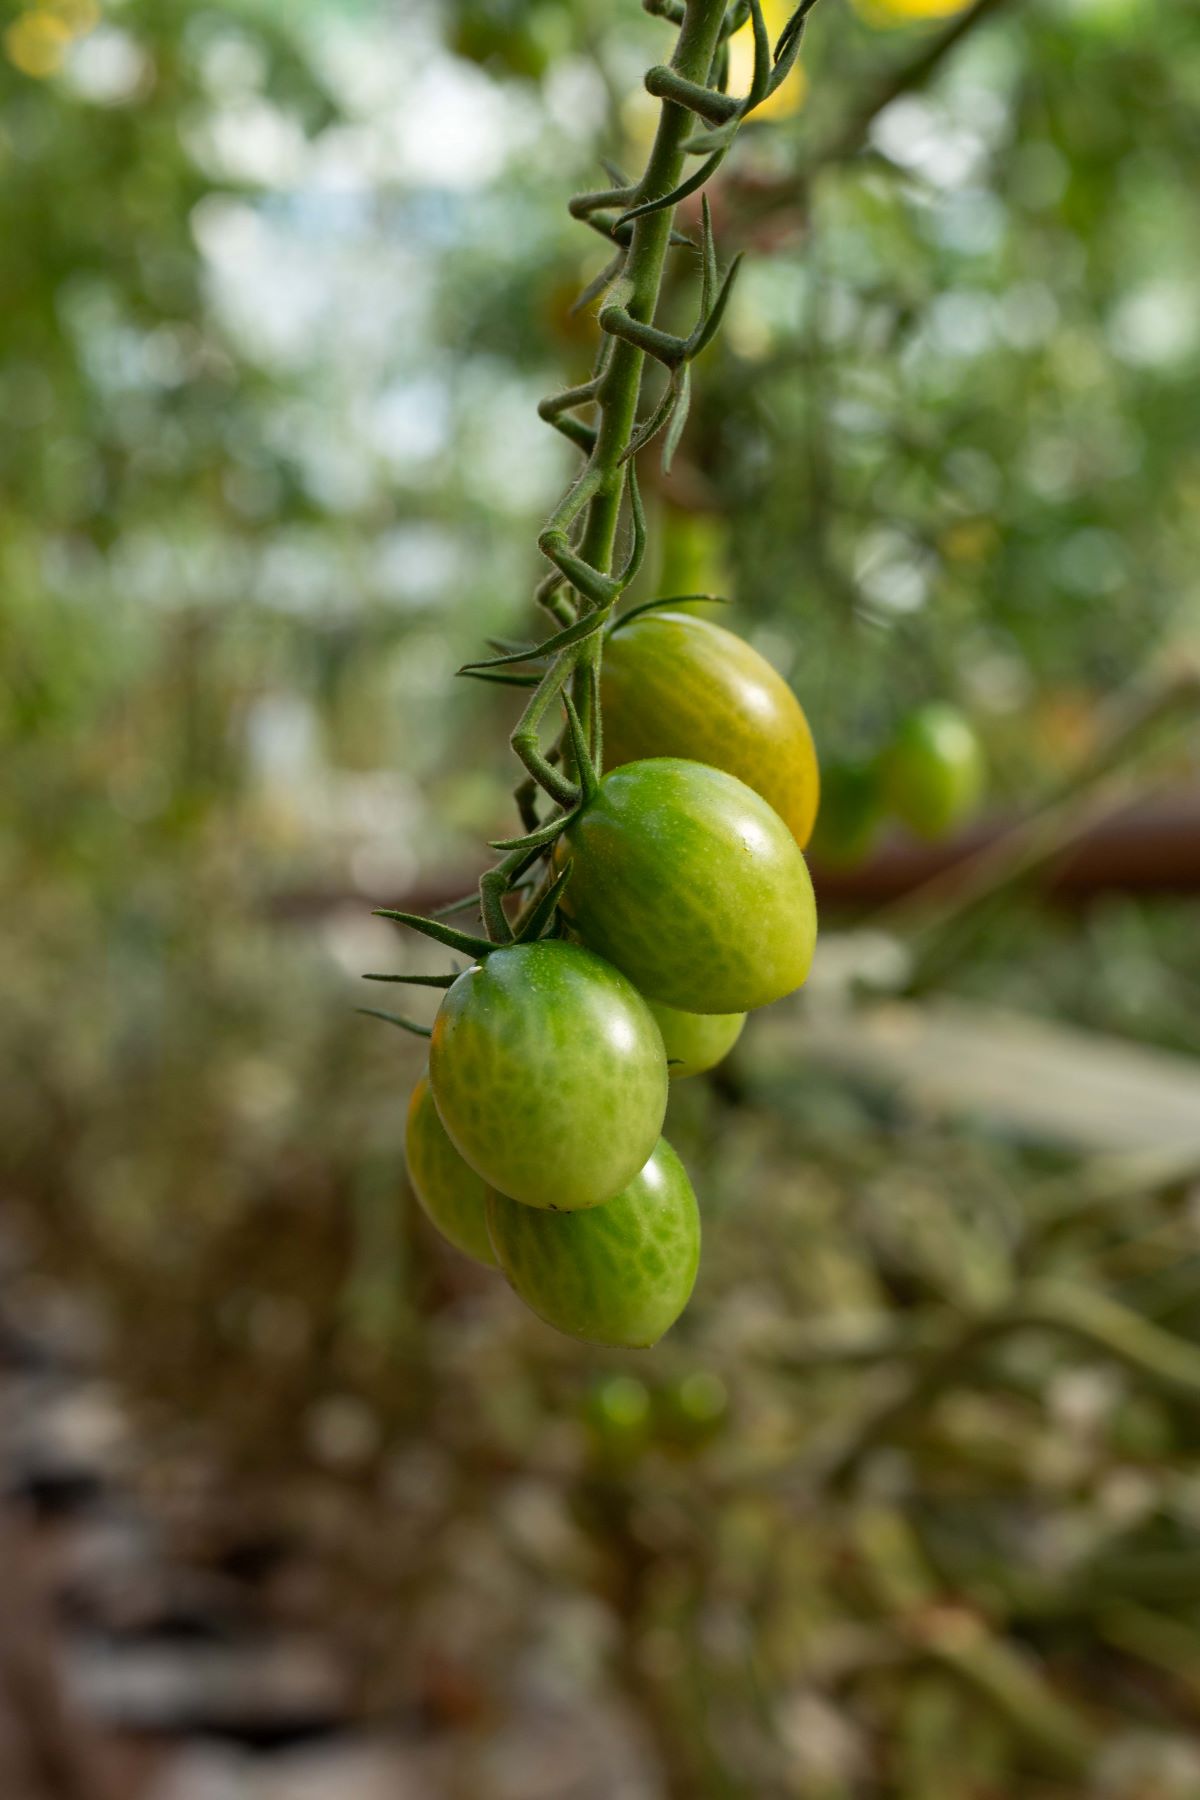 La régulation de l’humidité dans la serre favorise la bonne santé des cultures - ici, une grappe de tomates cerises.